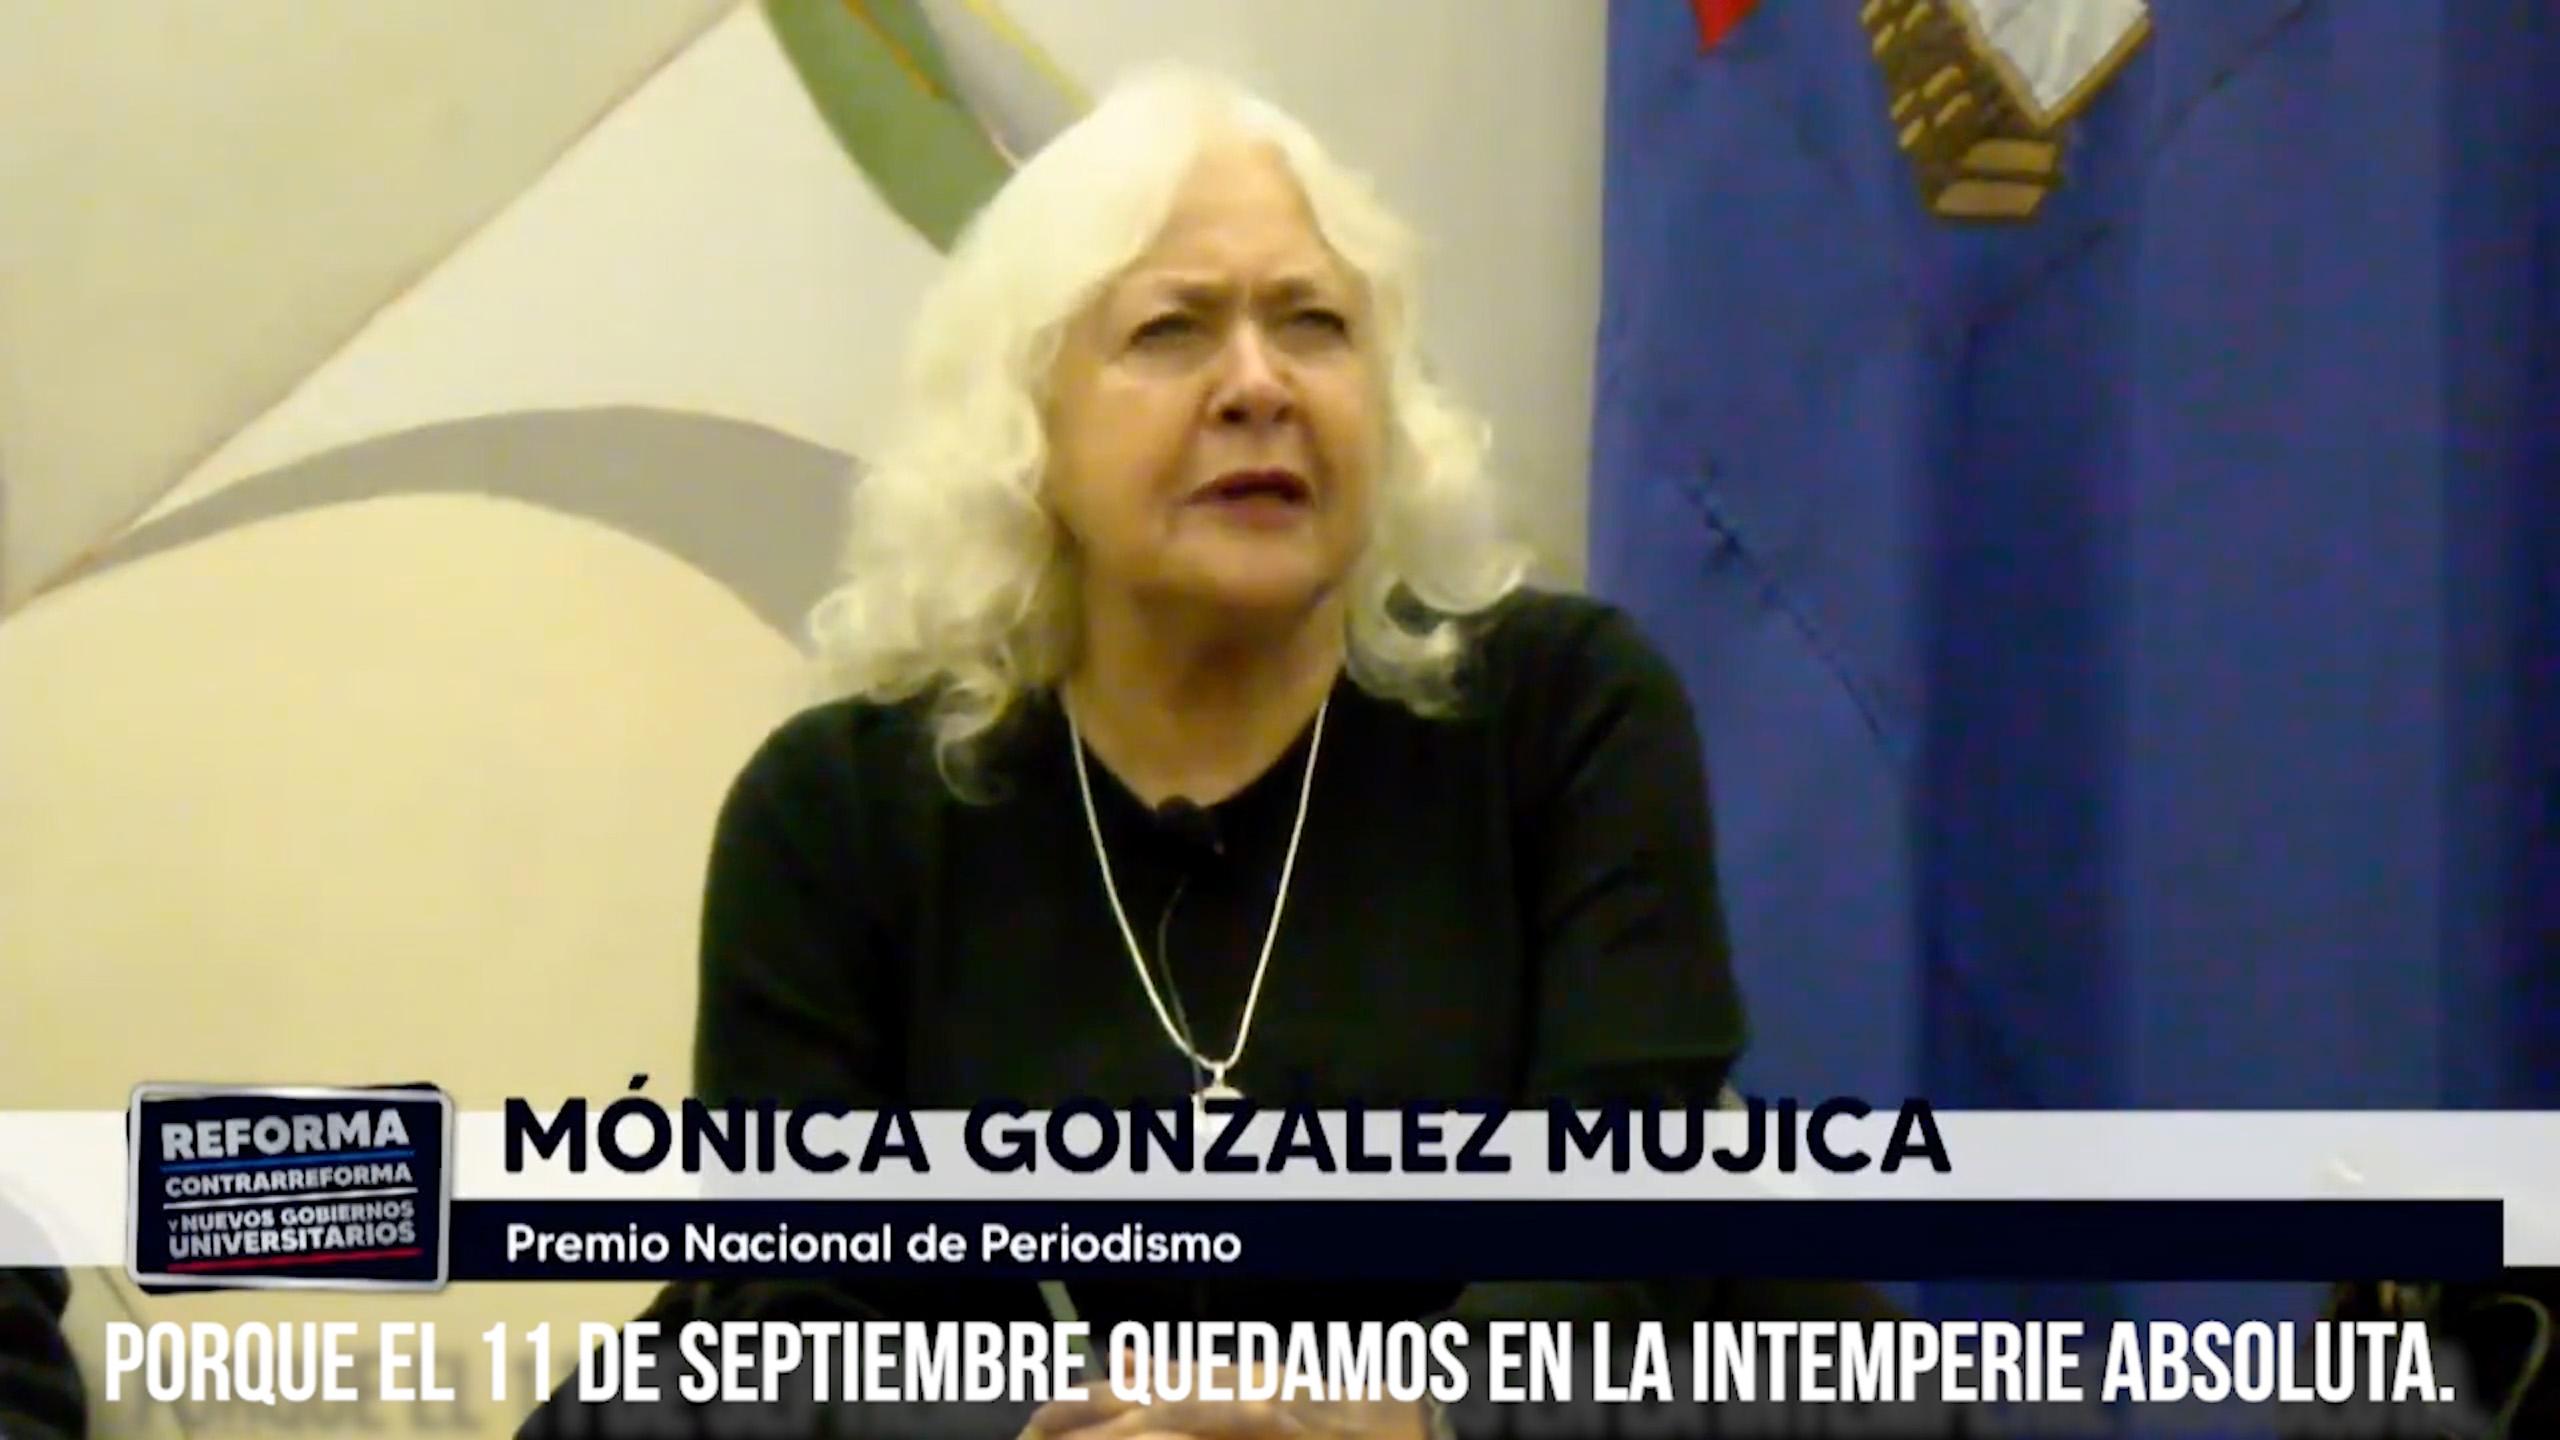 Mónica González en foro Reforma, Contrarreforma y Nuevos Gobiernos Universitarios